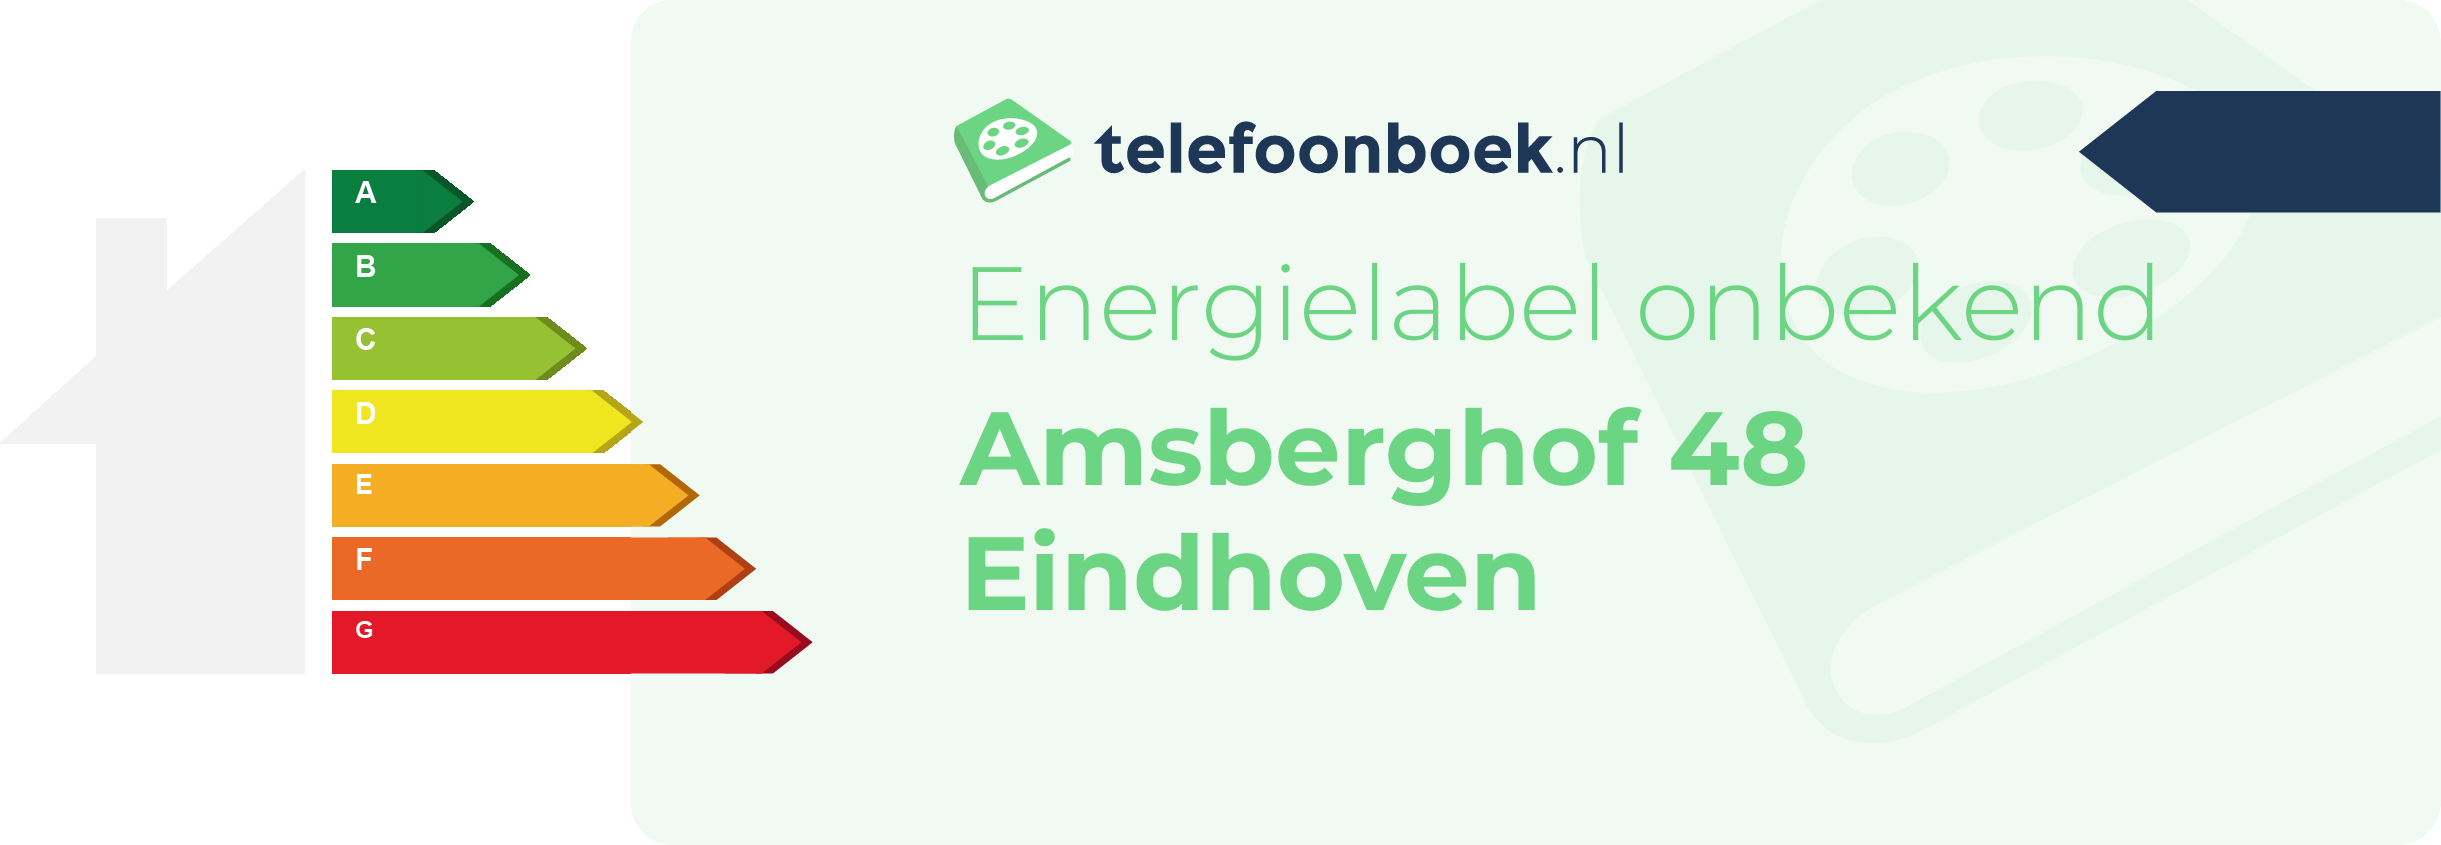 Energielabel Amsberghof 48 Eindhoven